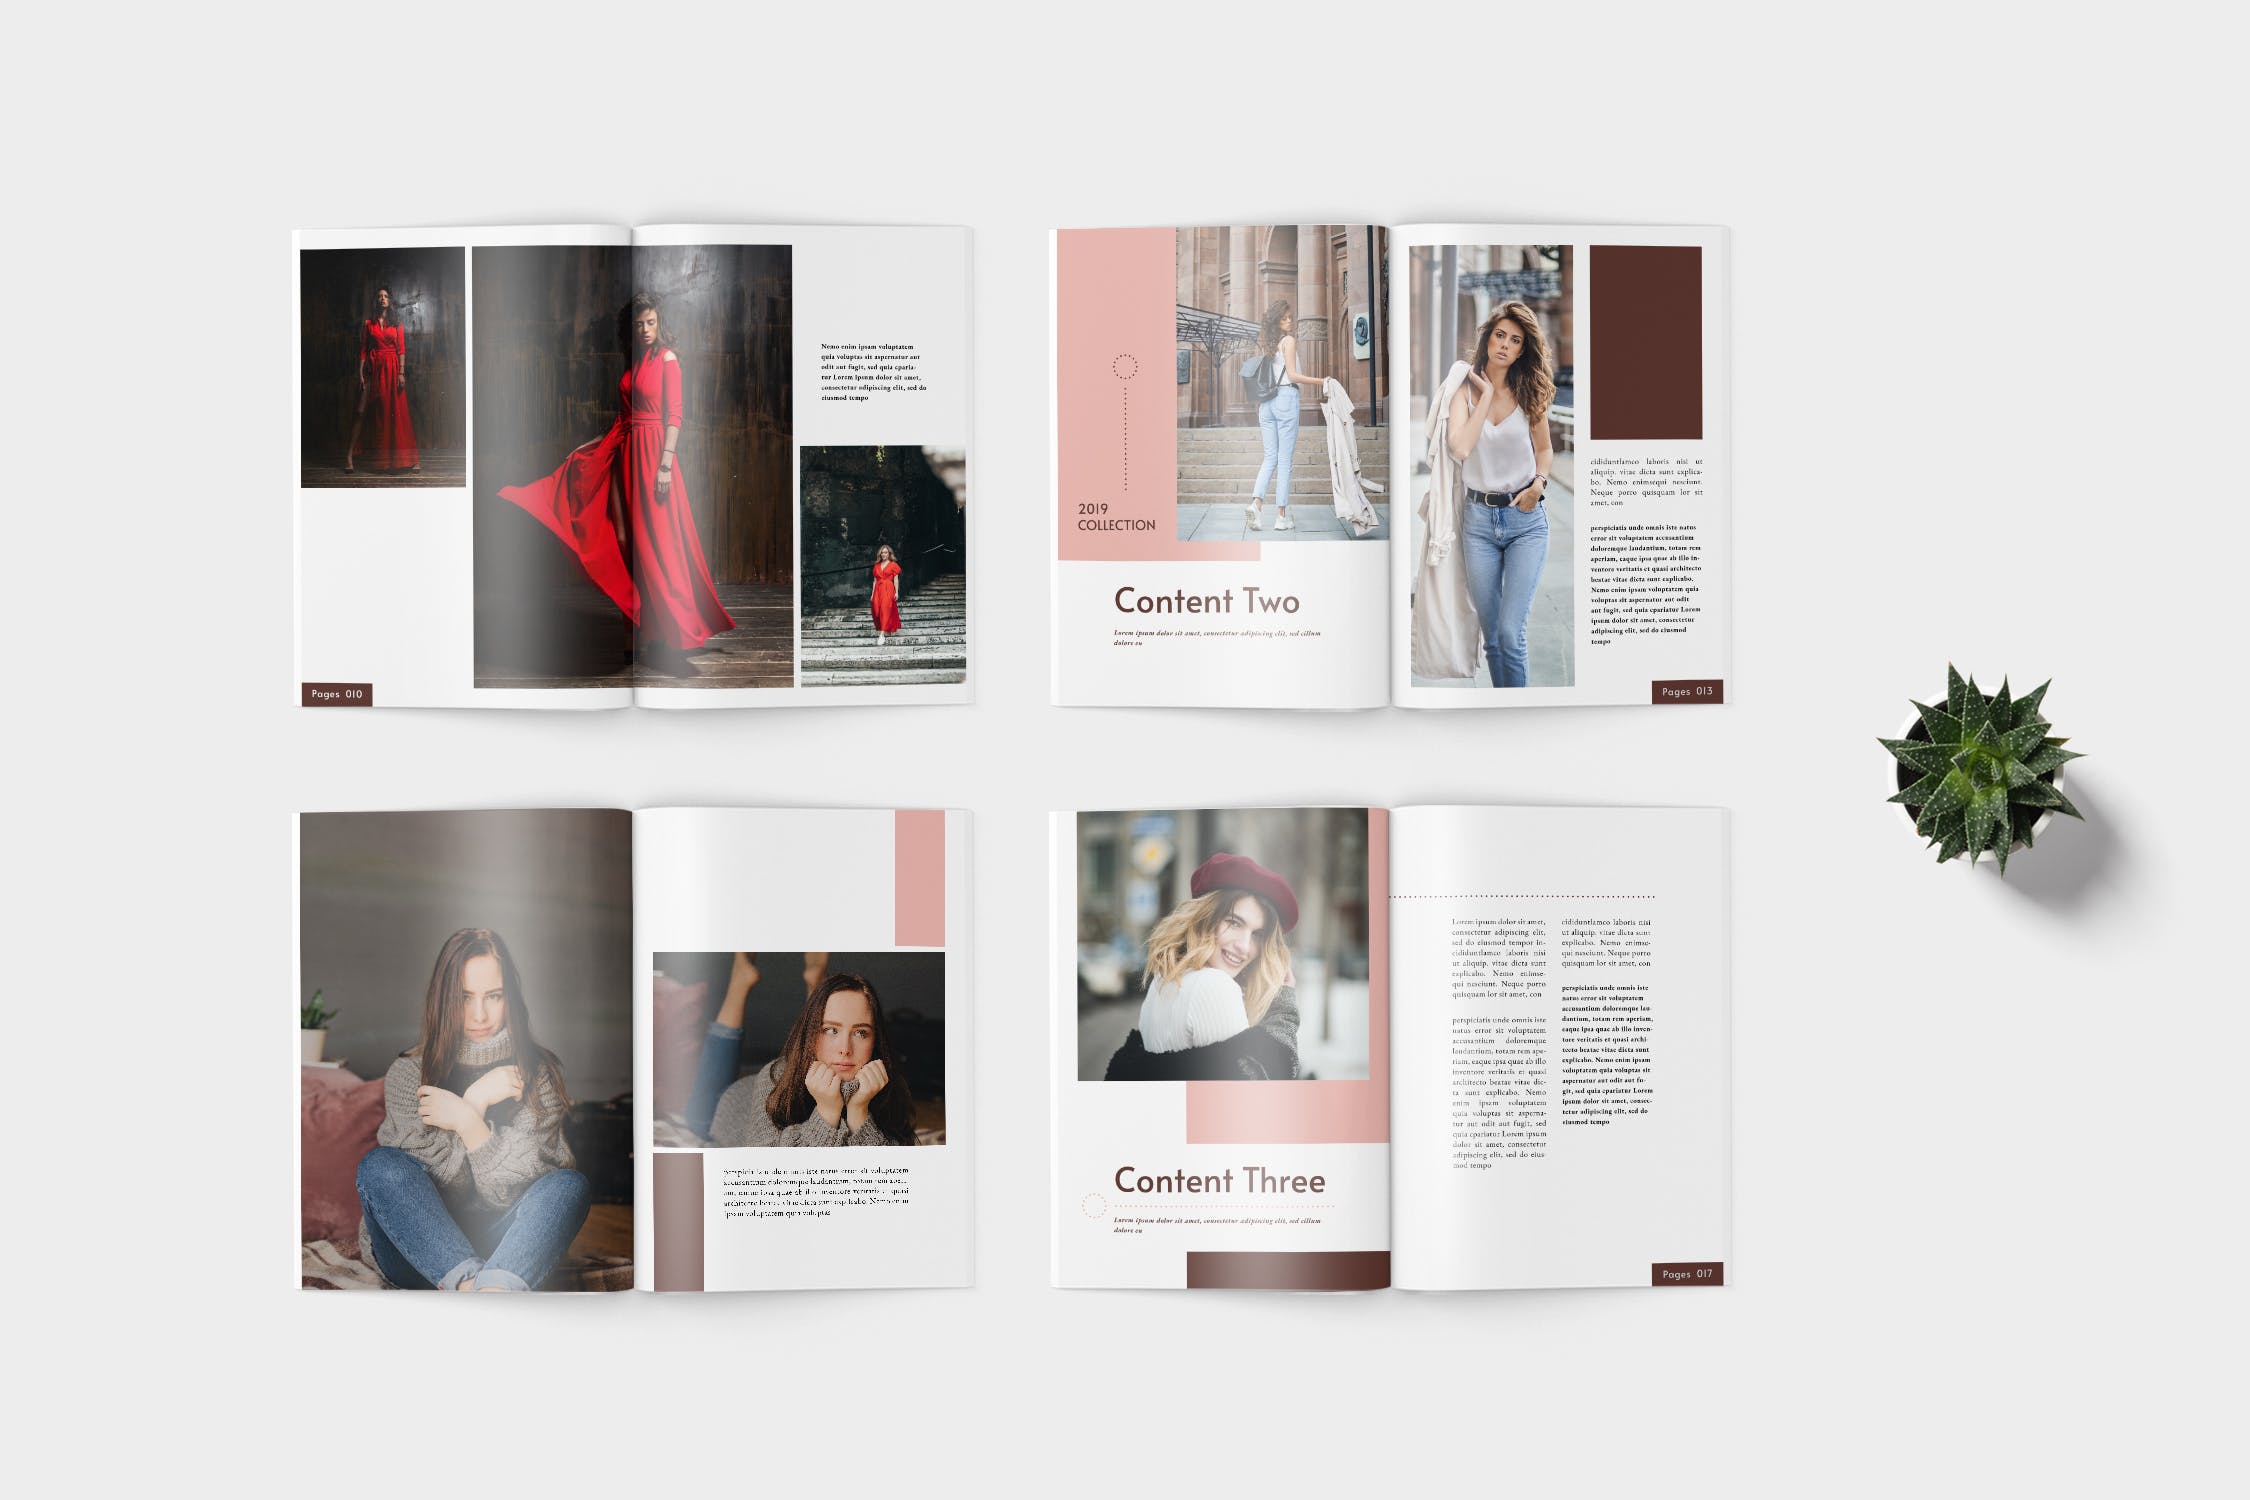 时装产品蚂蚁素材精选目录设计模板 Elana Fashion Lookbook Catalogue插图(3)